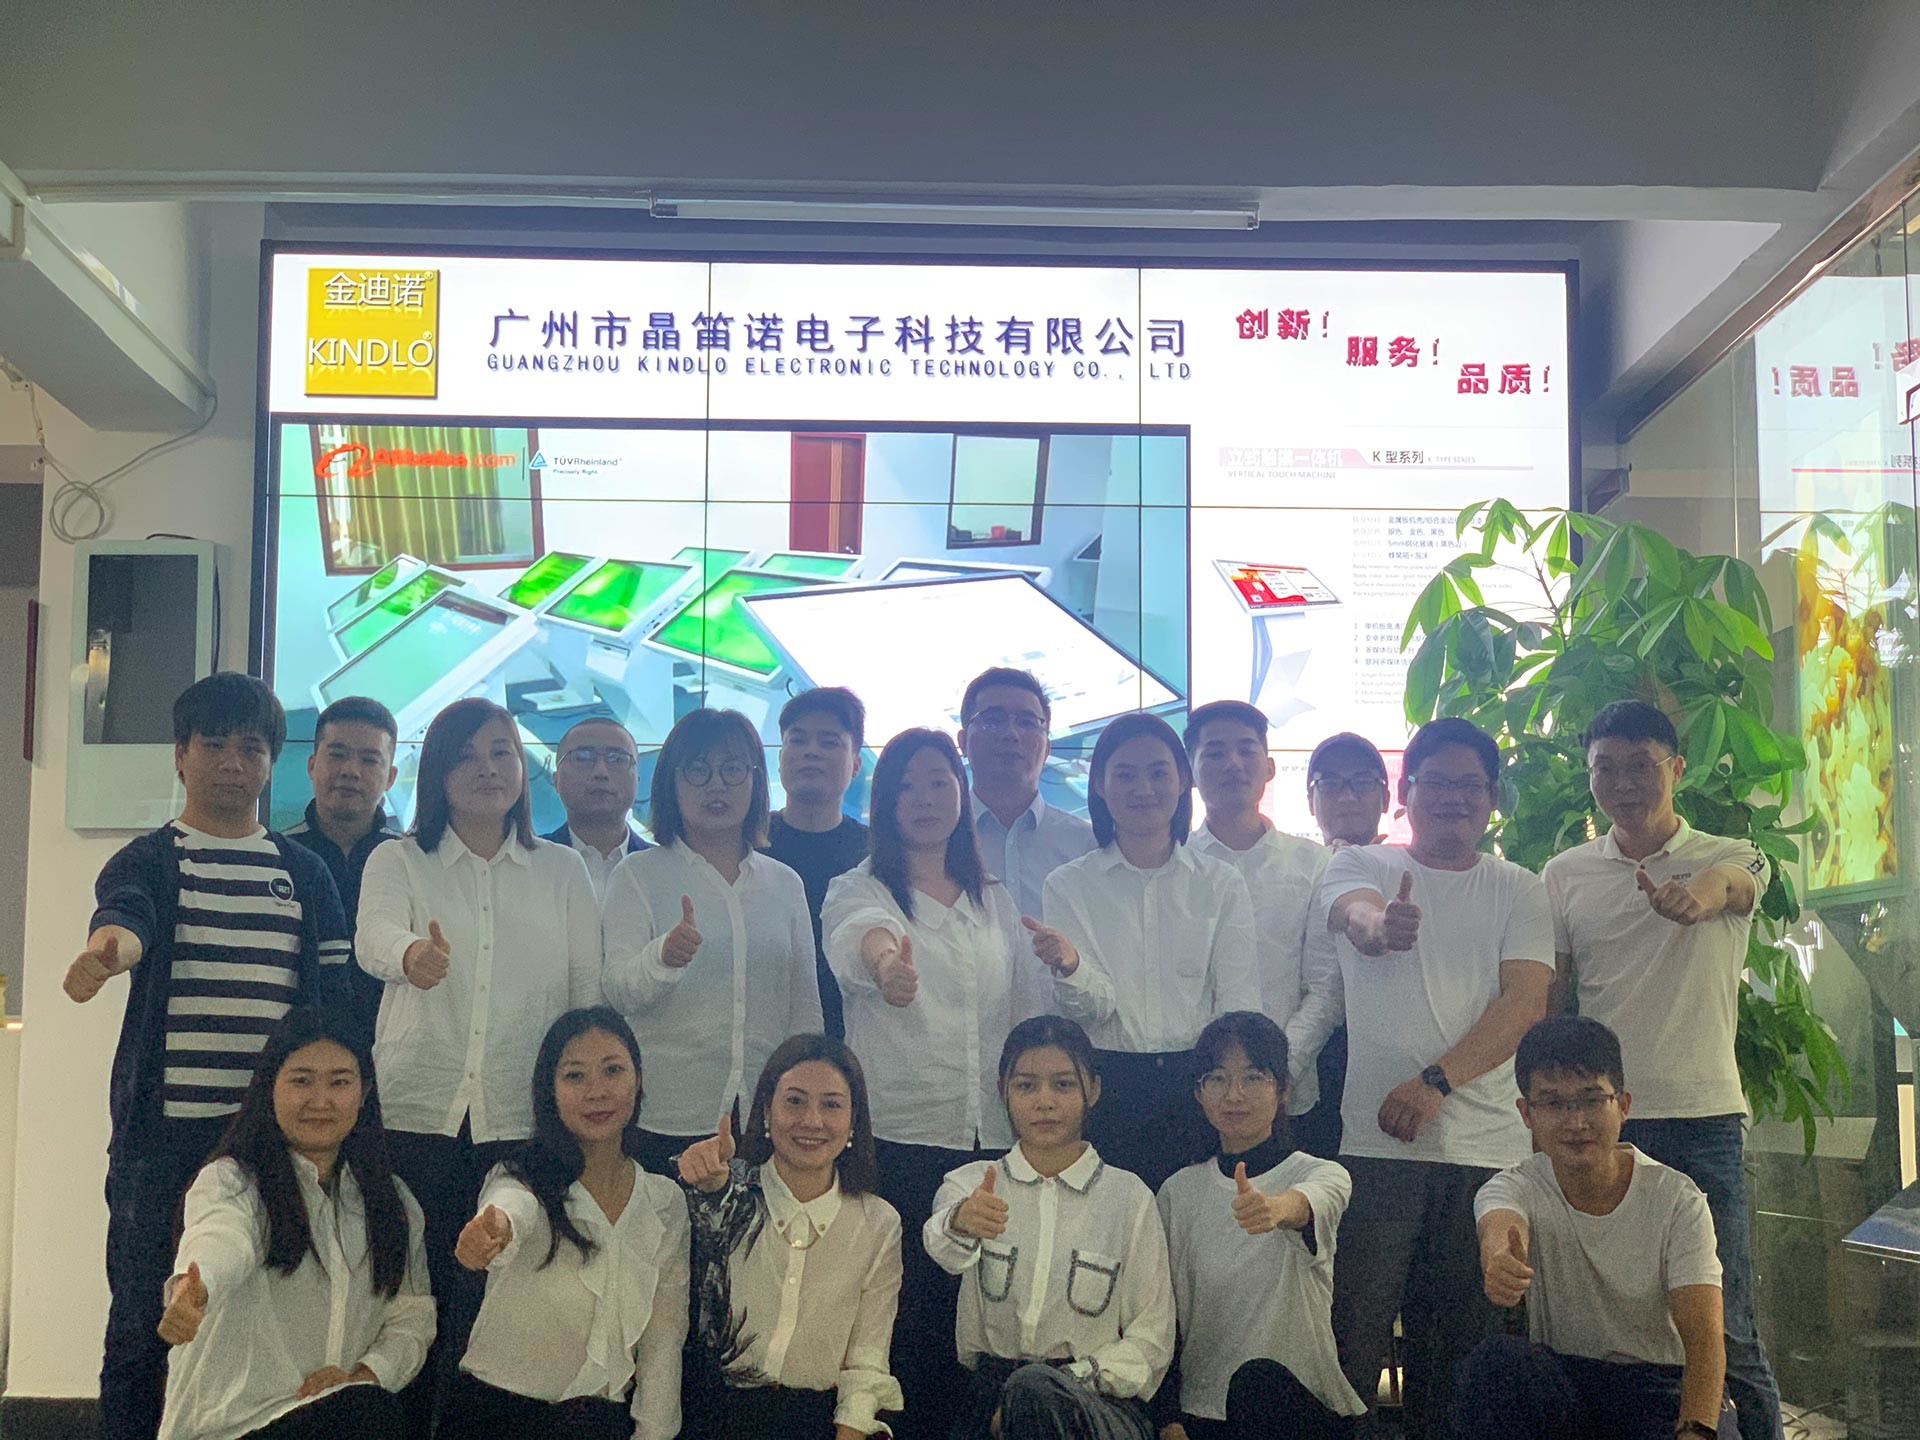 Chiny Guangzhou Jingdinuo Electronic Technology Co., Ltd.